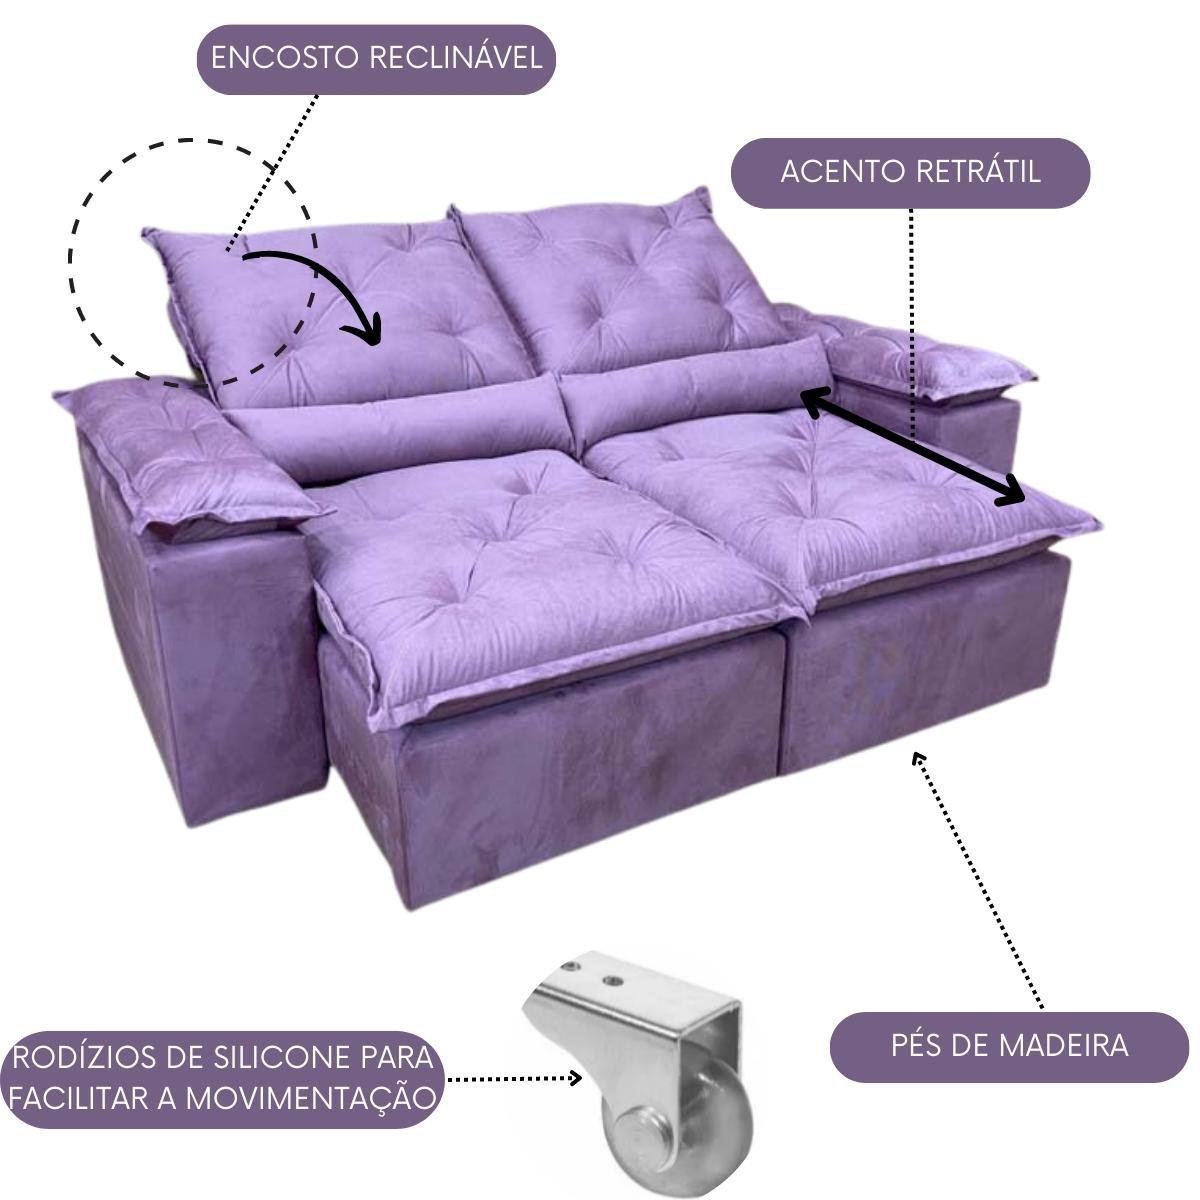 Sofa Reclinavel Retratil Design Elegante Athena 2,30m Veludo Cor:Violeta - 2